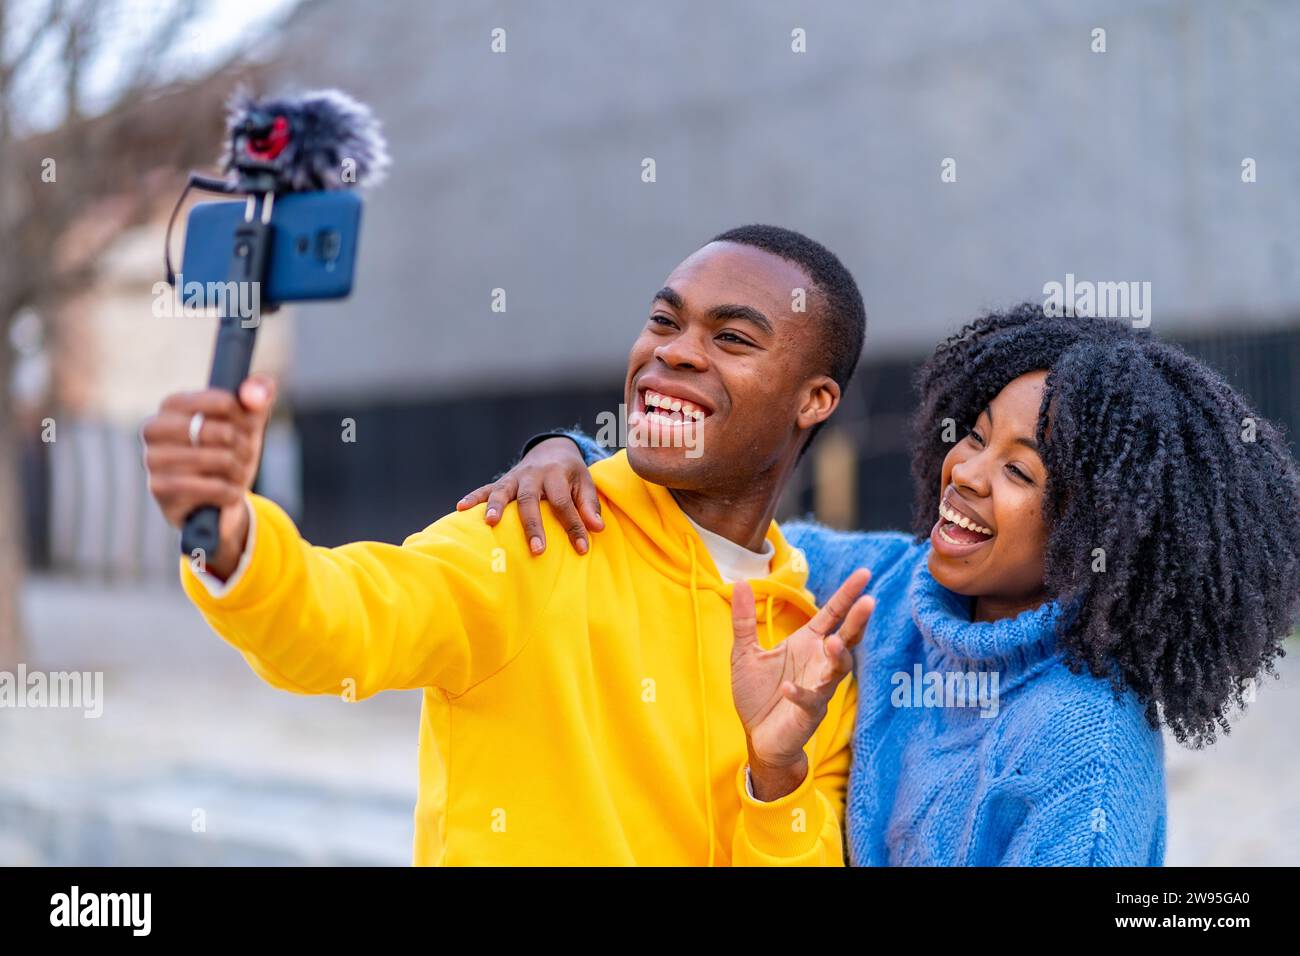 Junge afrikaner lächeln während eines Live-Streams auf der Straße Stockfoto